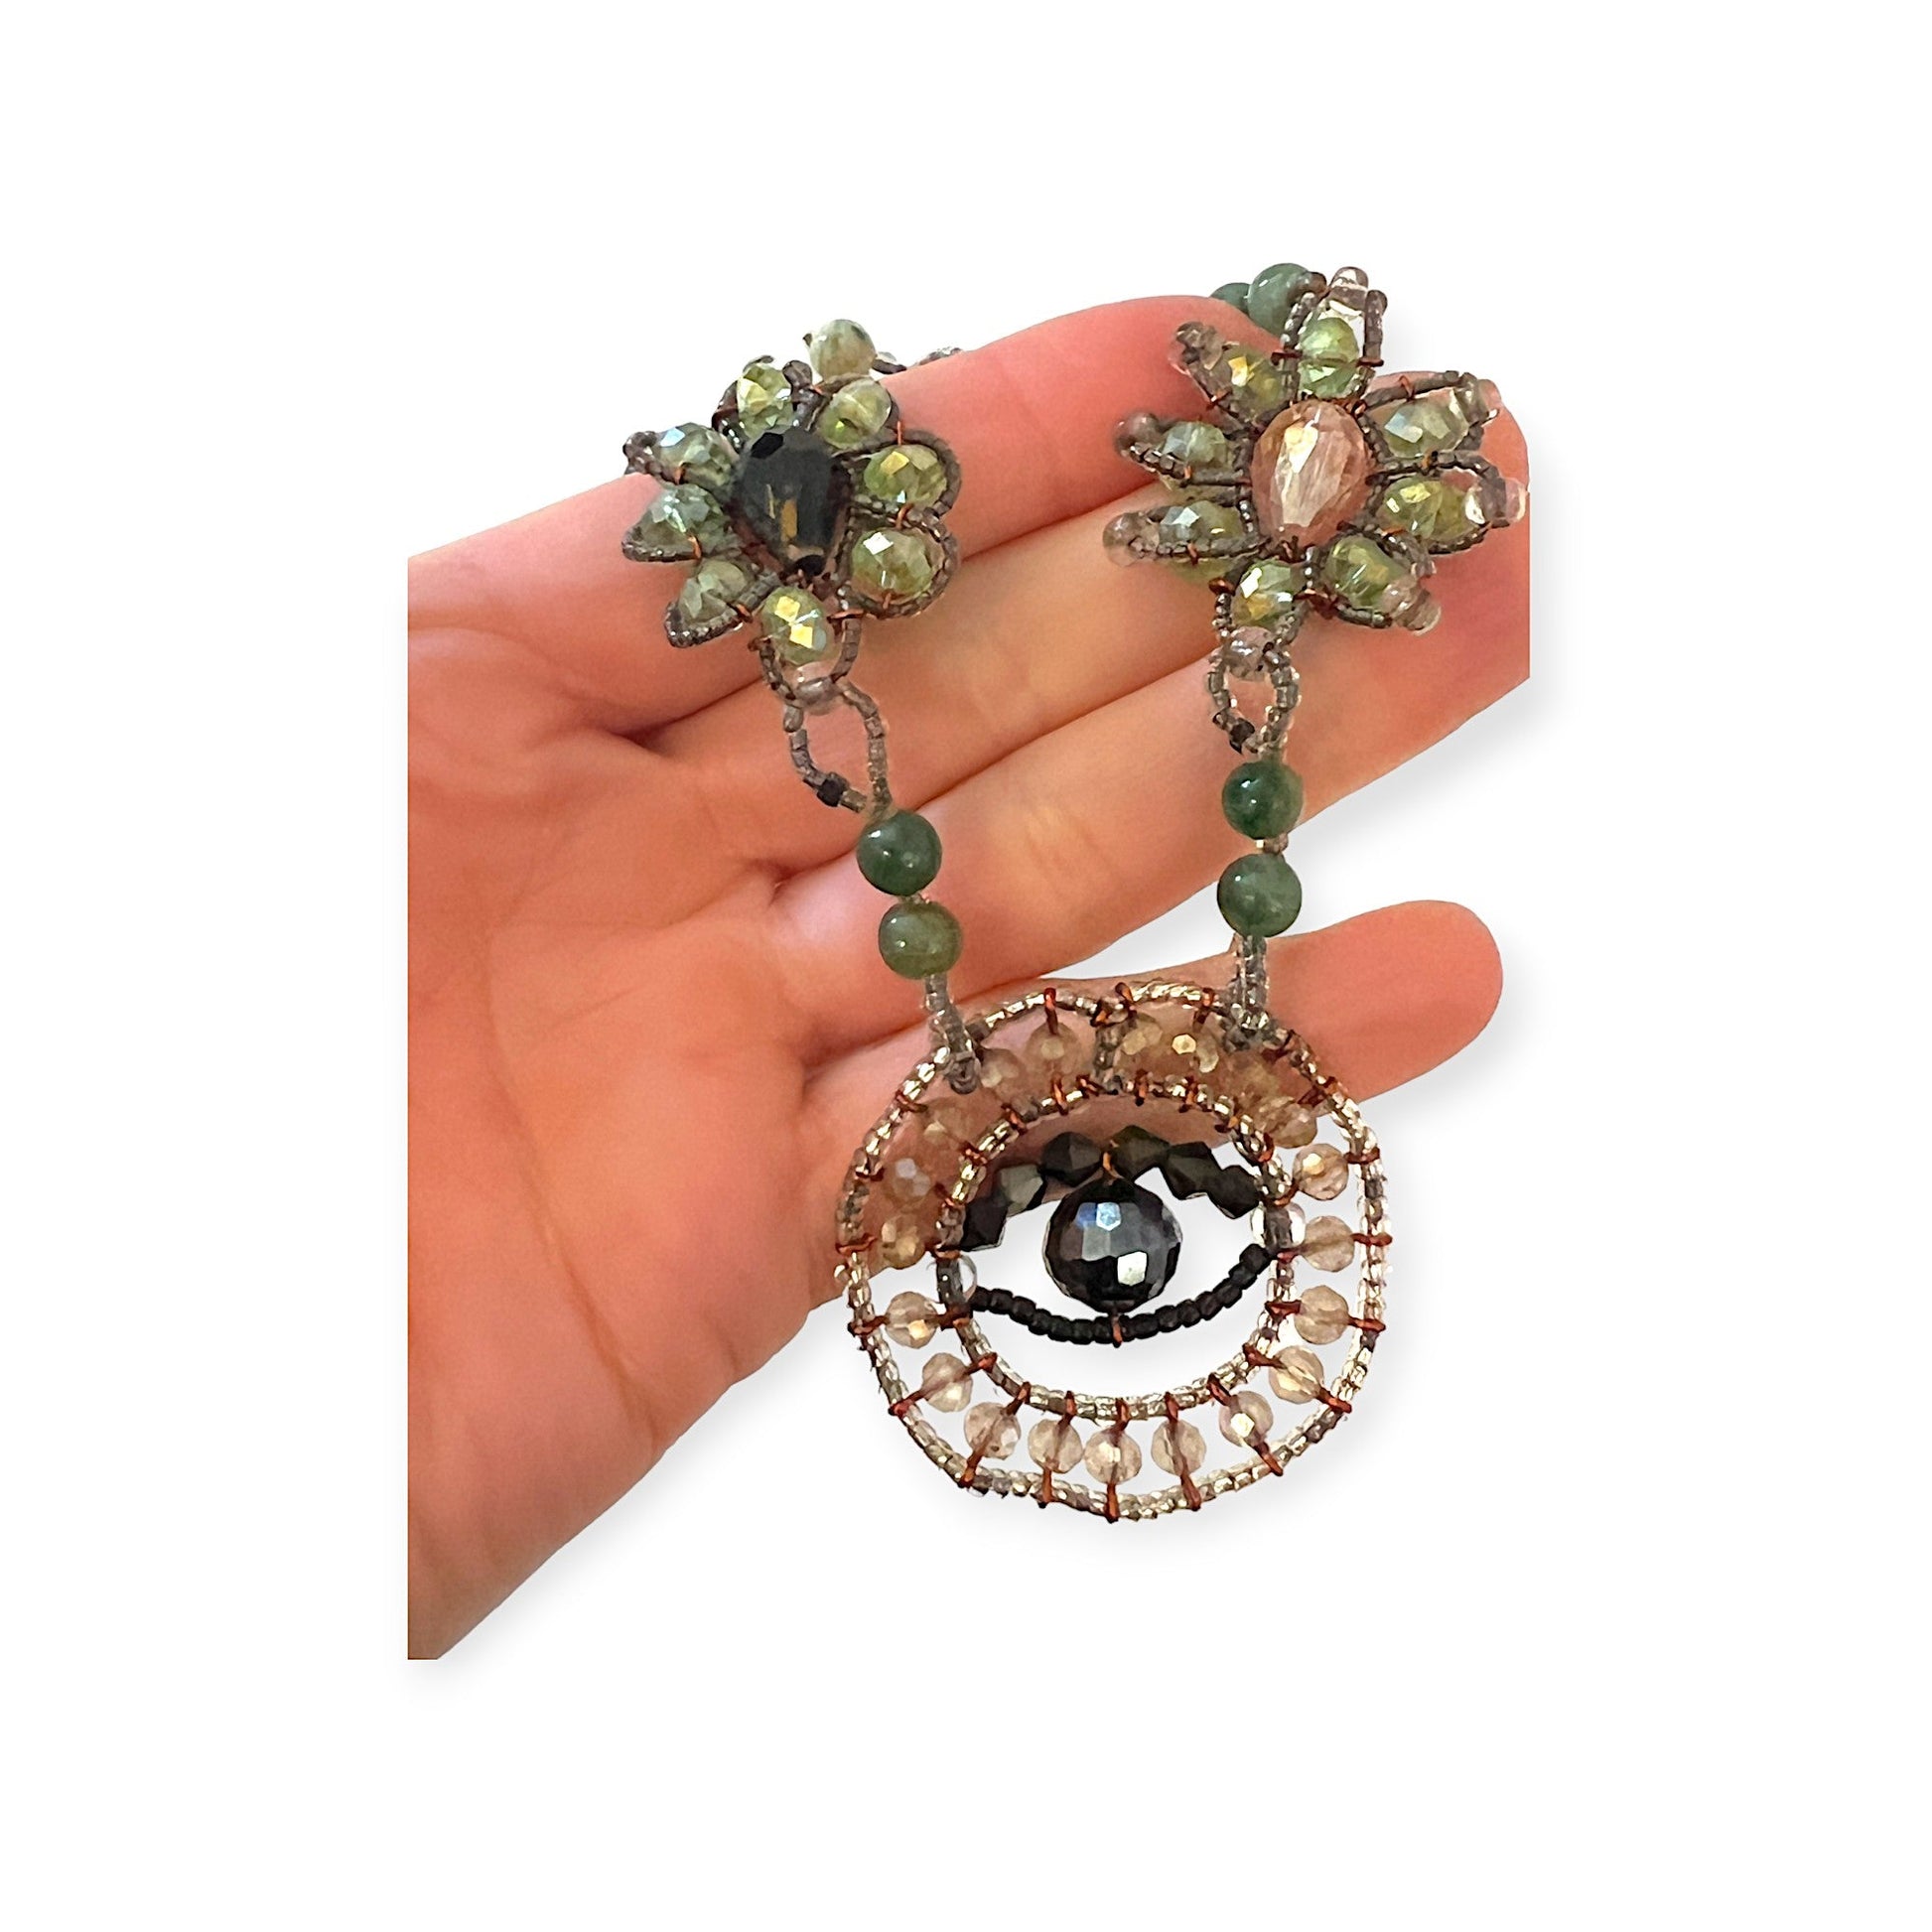 Evil eye jade necklace with crystals for a unique look - Sundara Joon